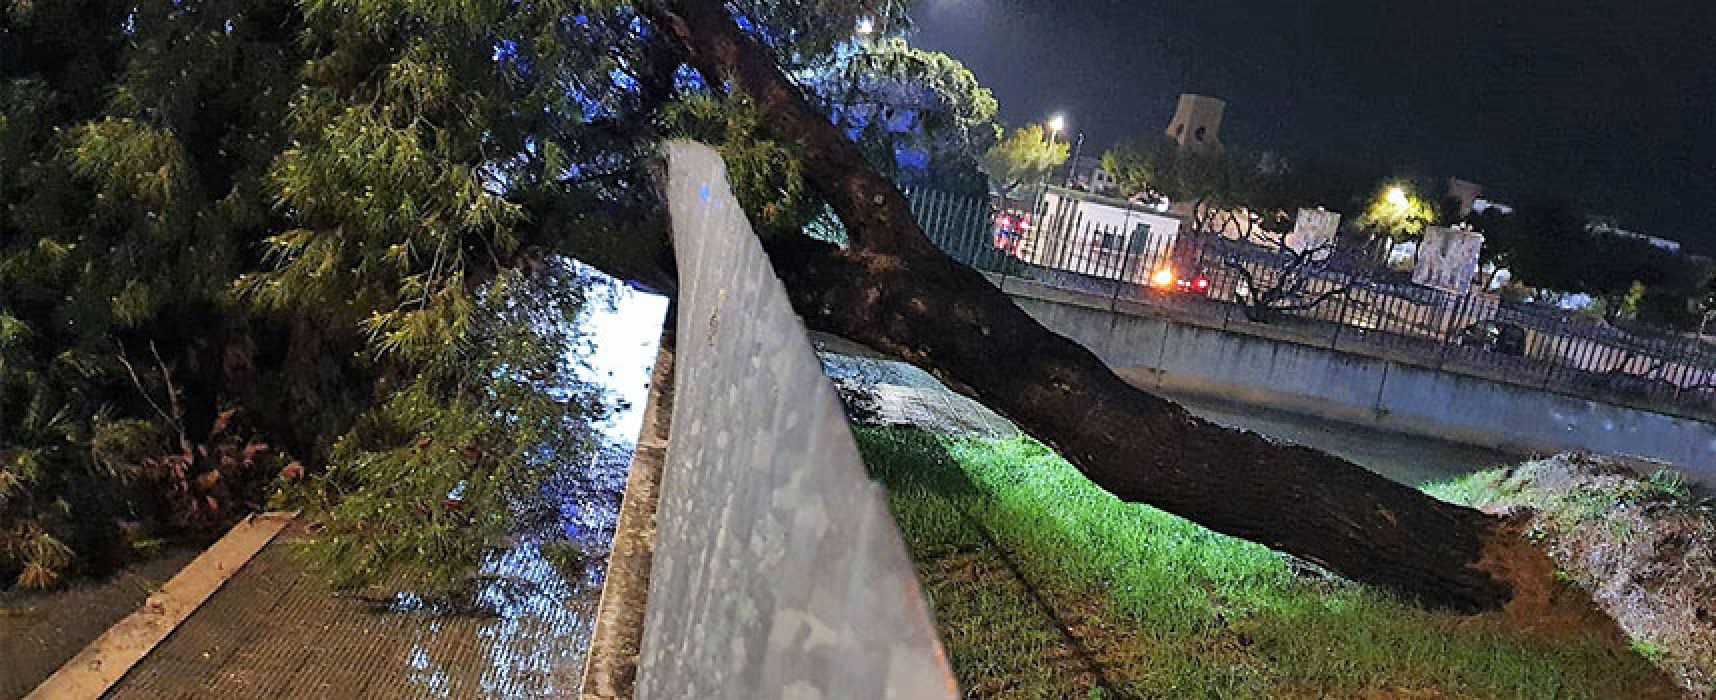 Amendolagine su caduta albero: “Tragedia sfiorata, sordità istituzionale amministrazione”